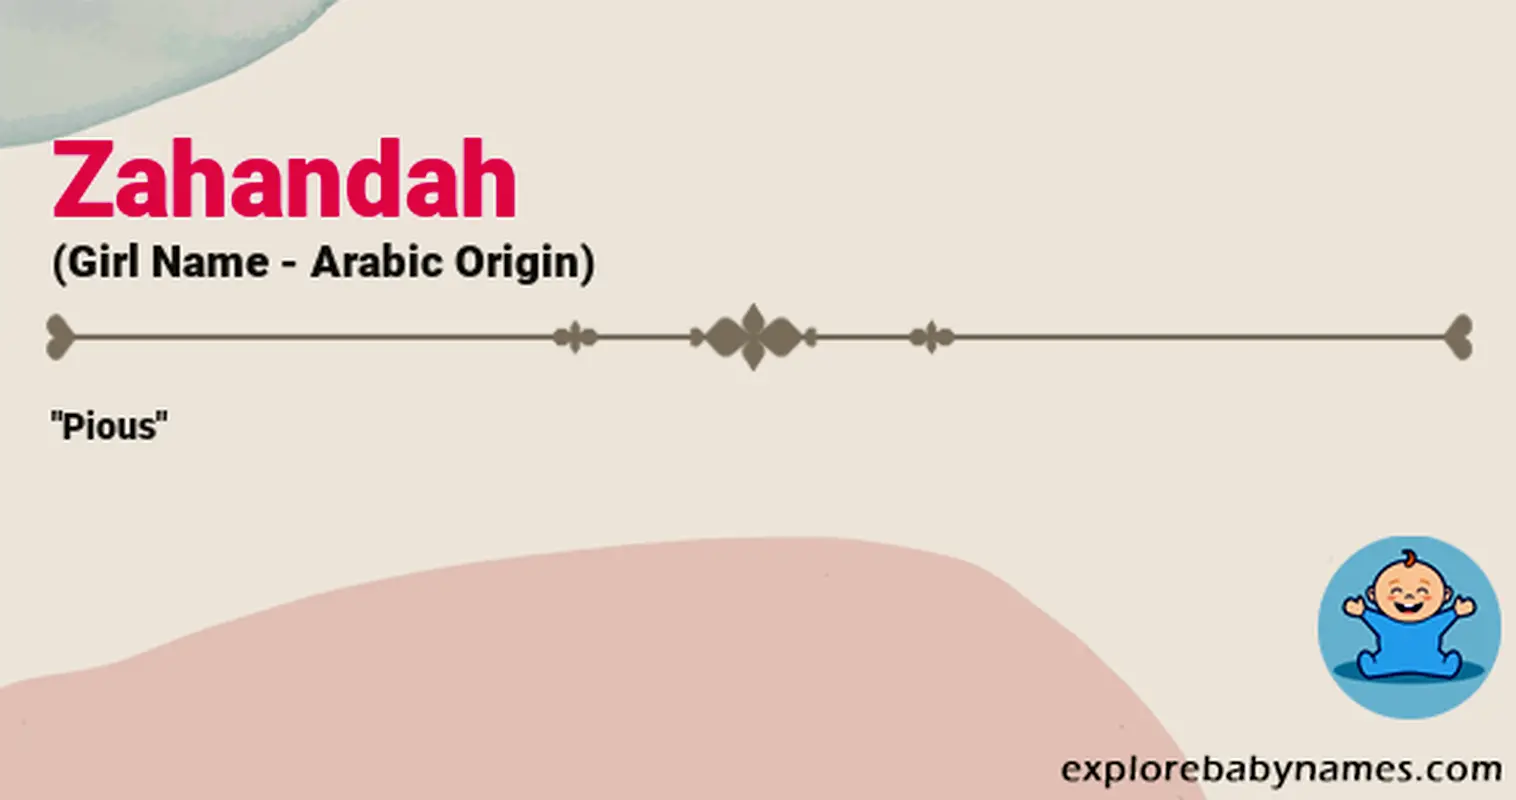 Meaning of Zahandah